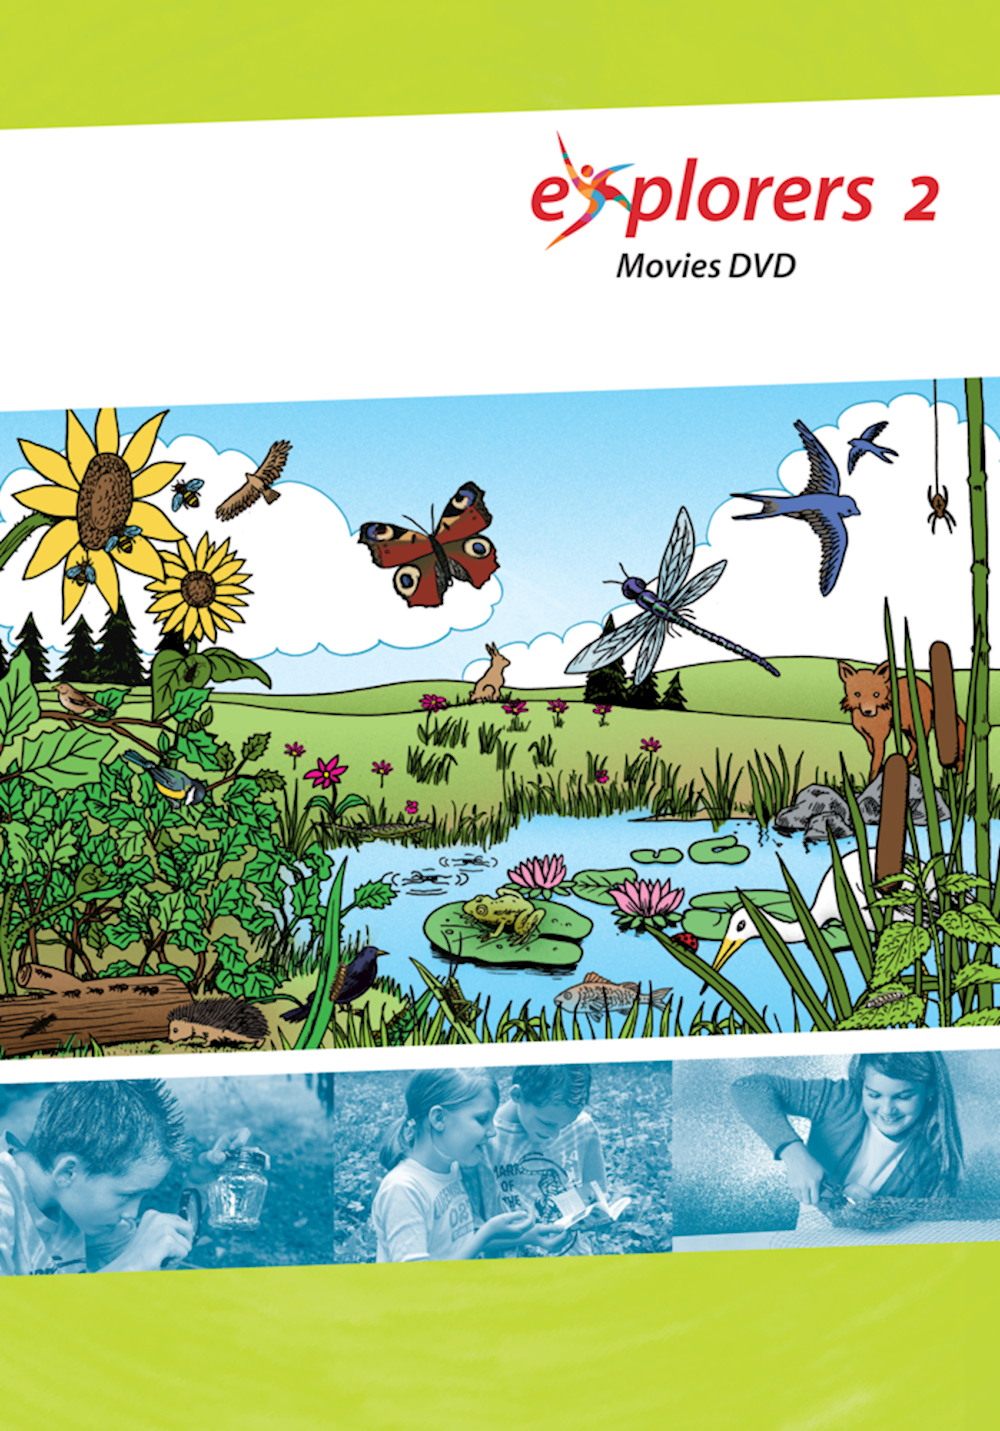 Explorers 2 Movies DVD